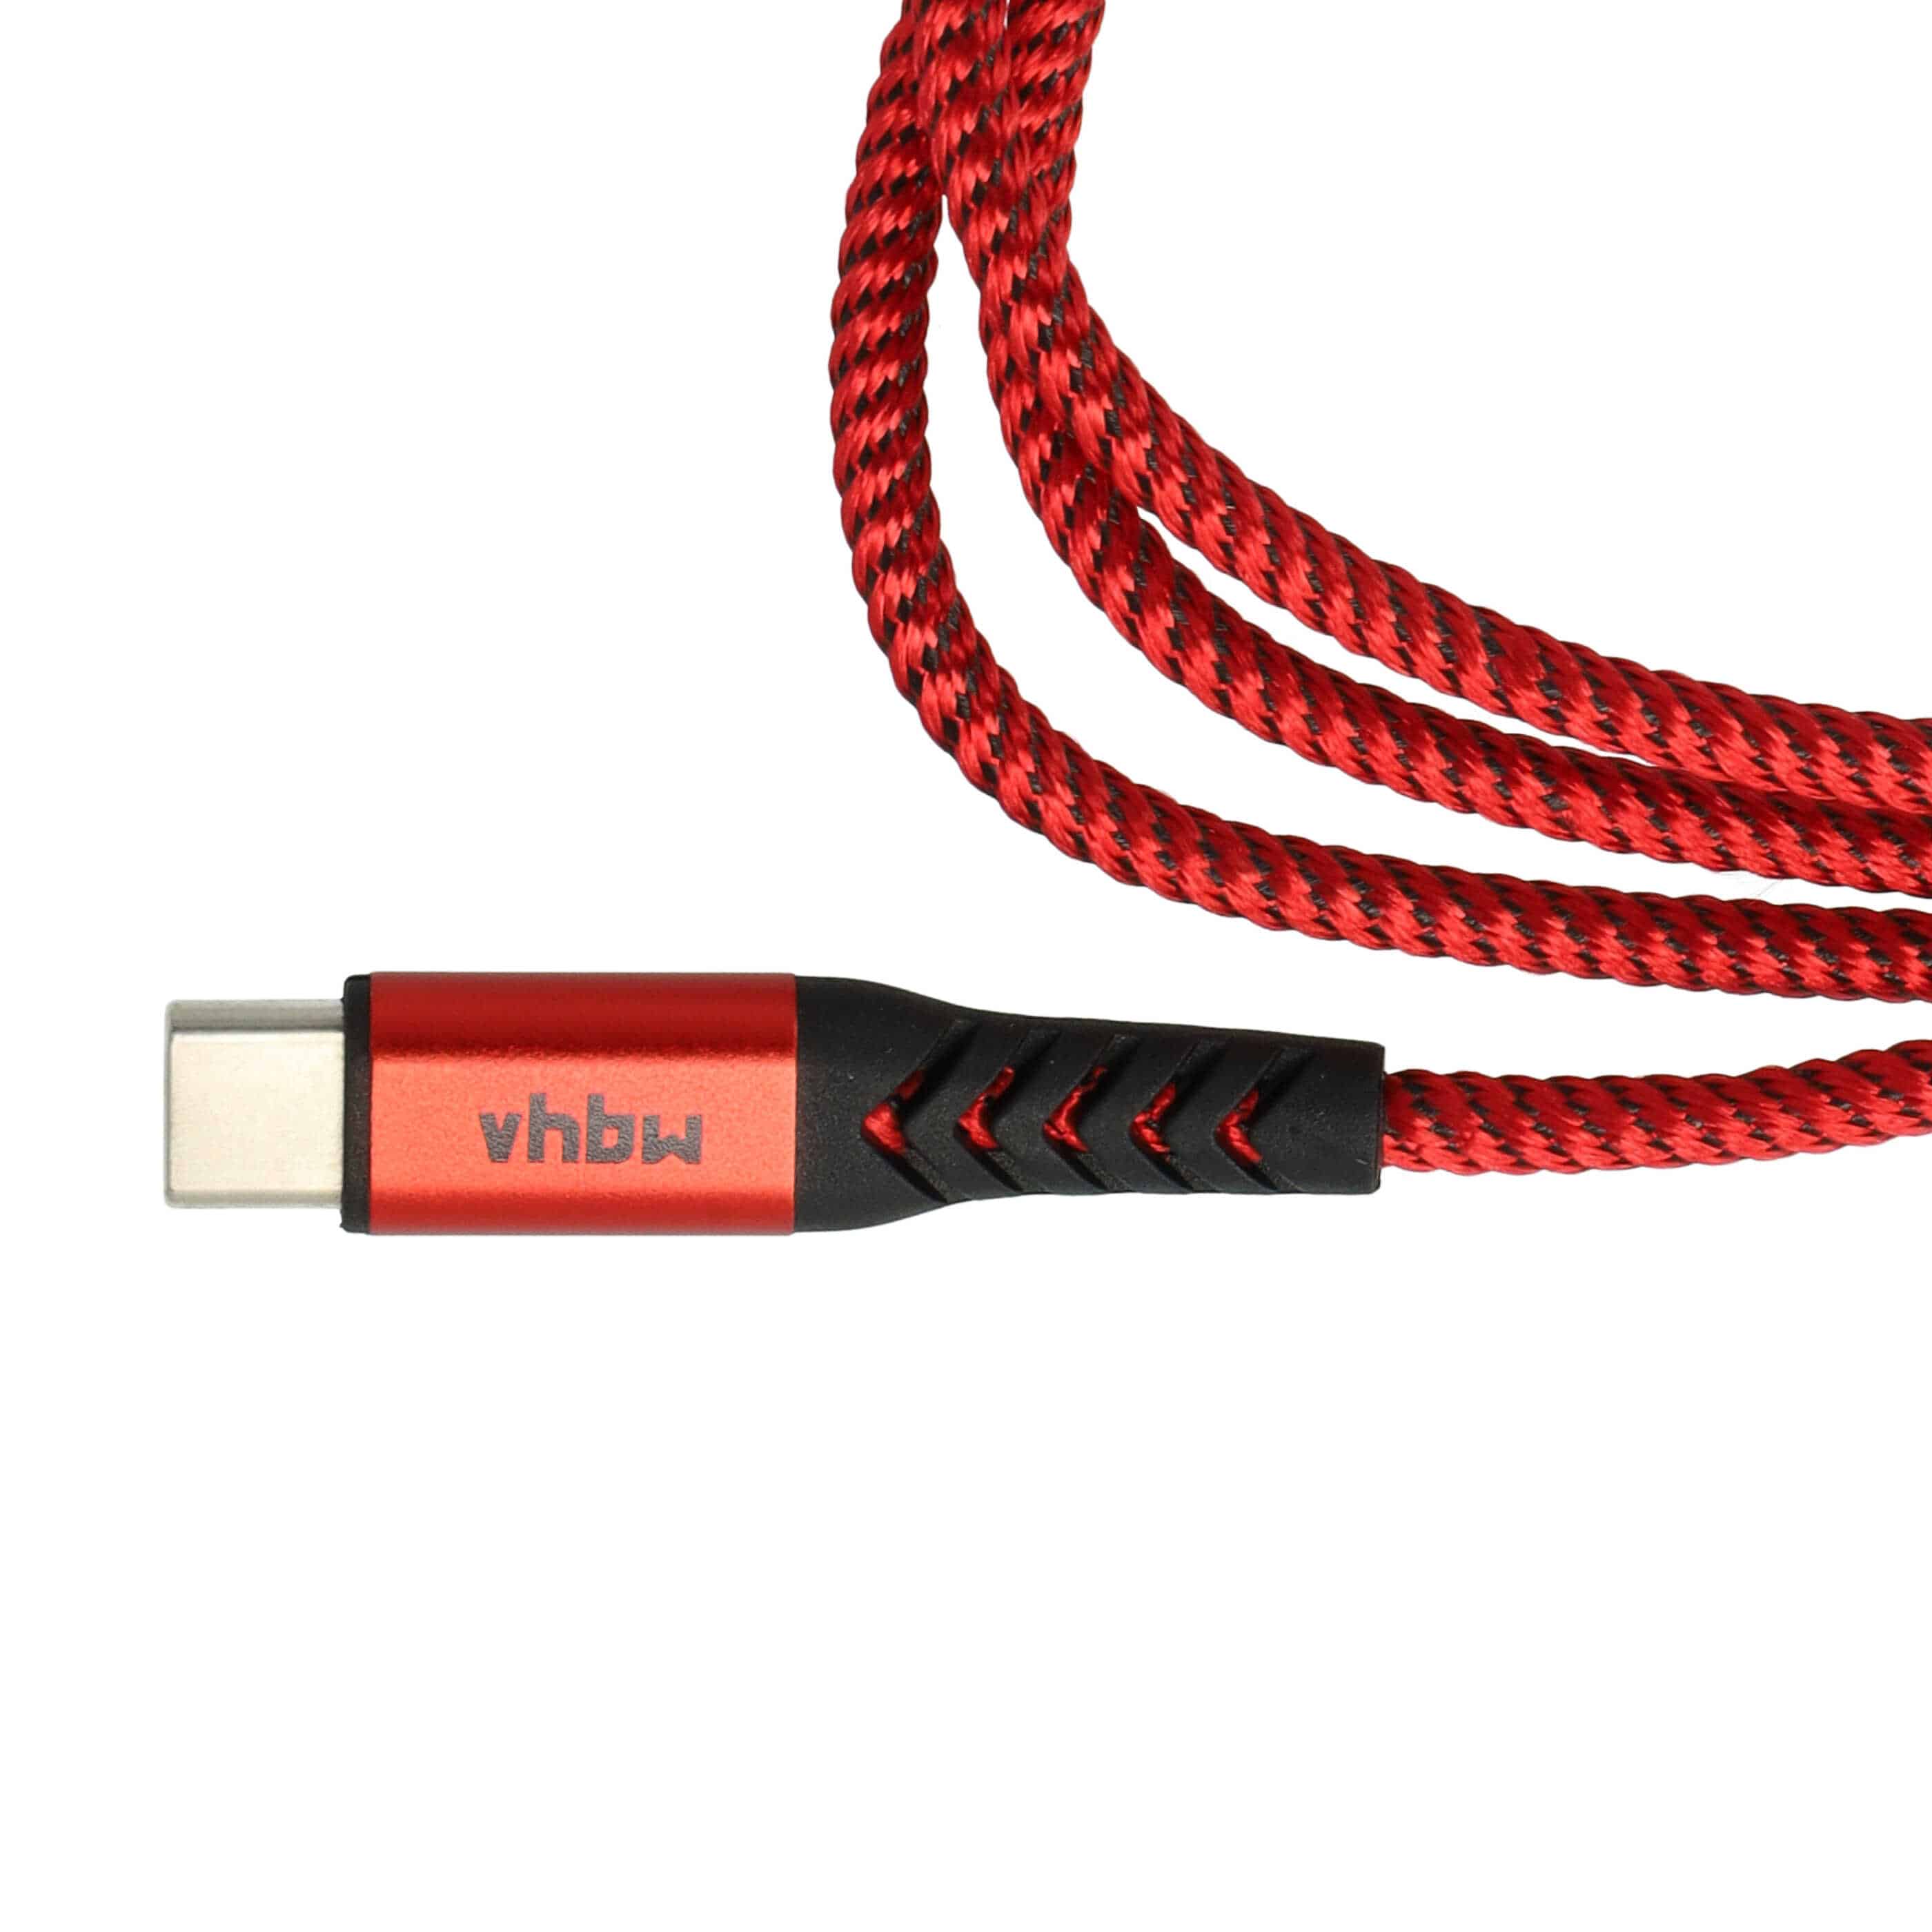 Cavo lightning - USB C, Thunderbolt 3 per dispositivi Apple iOS Apple MacBook - nero / rosso, 100cm